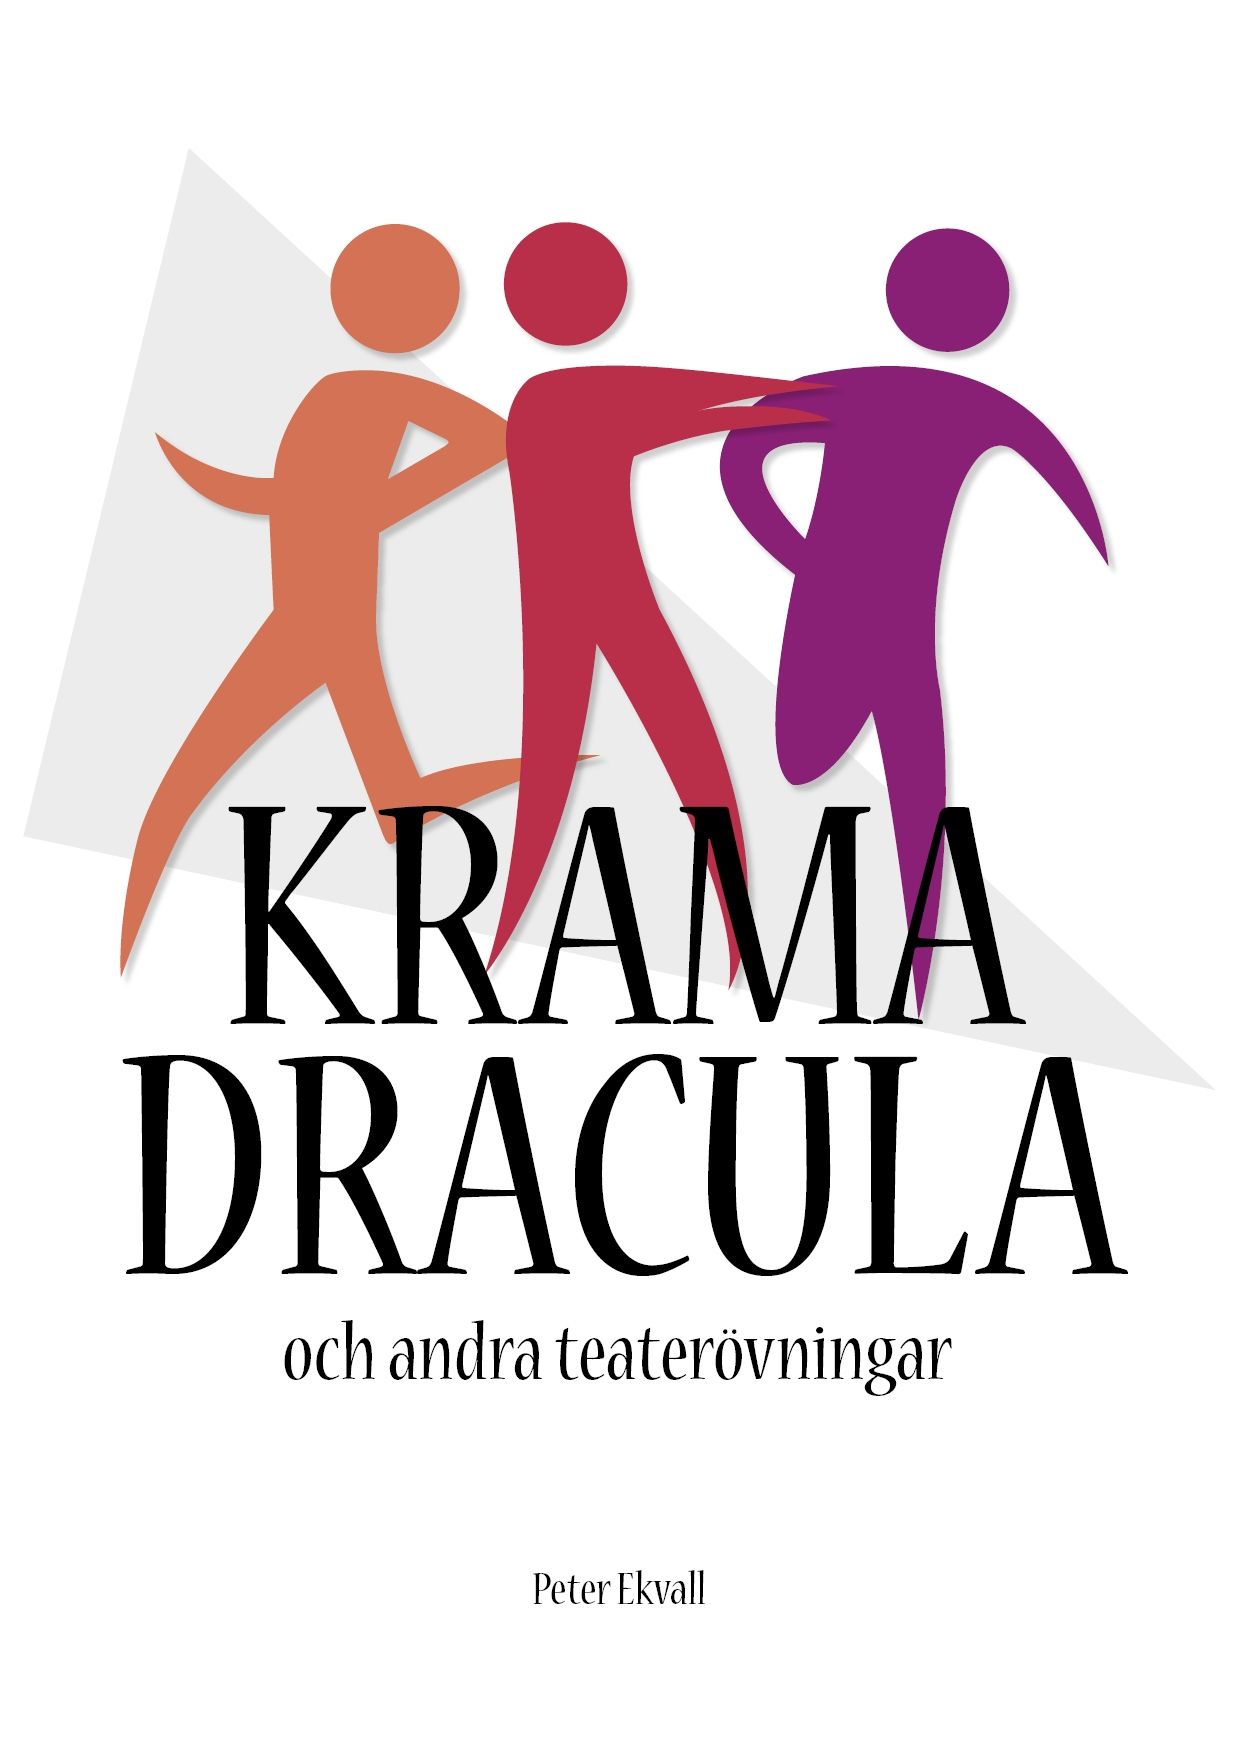 Krama Dracula och andra teaterövningar, eBook by Peter Ekvall